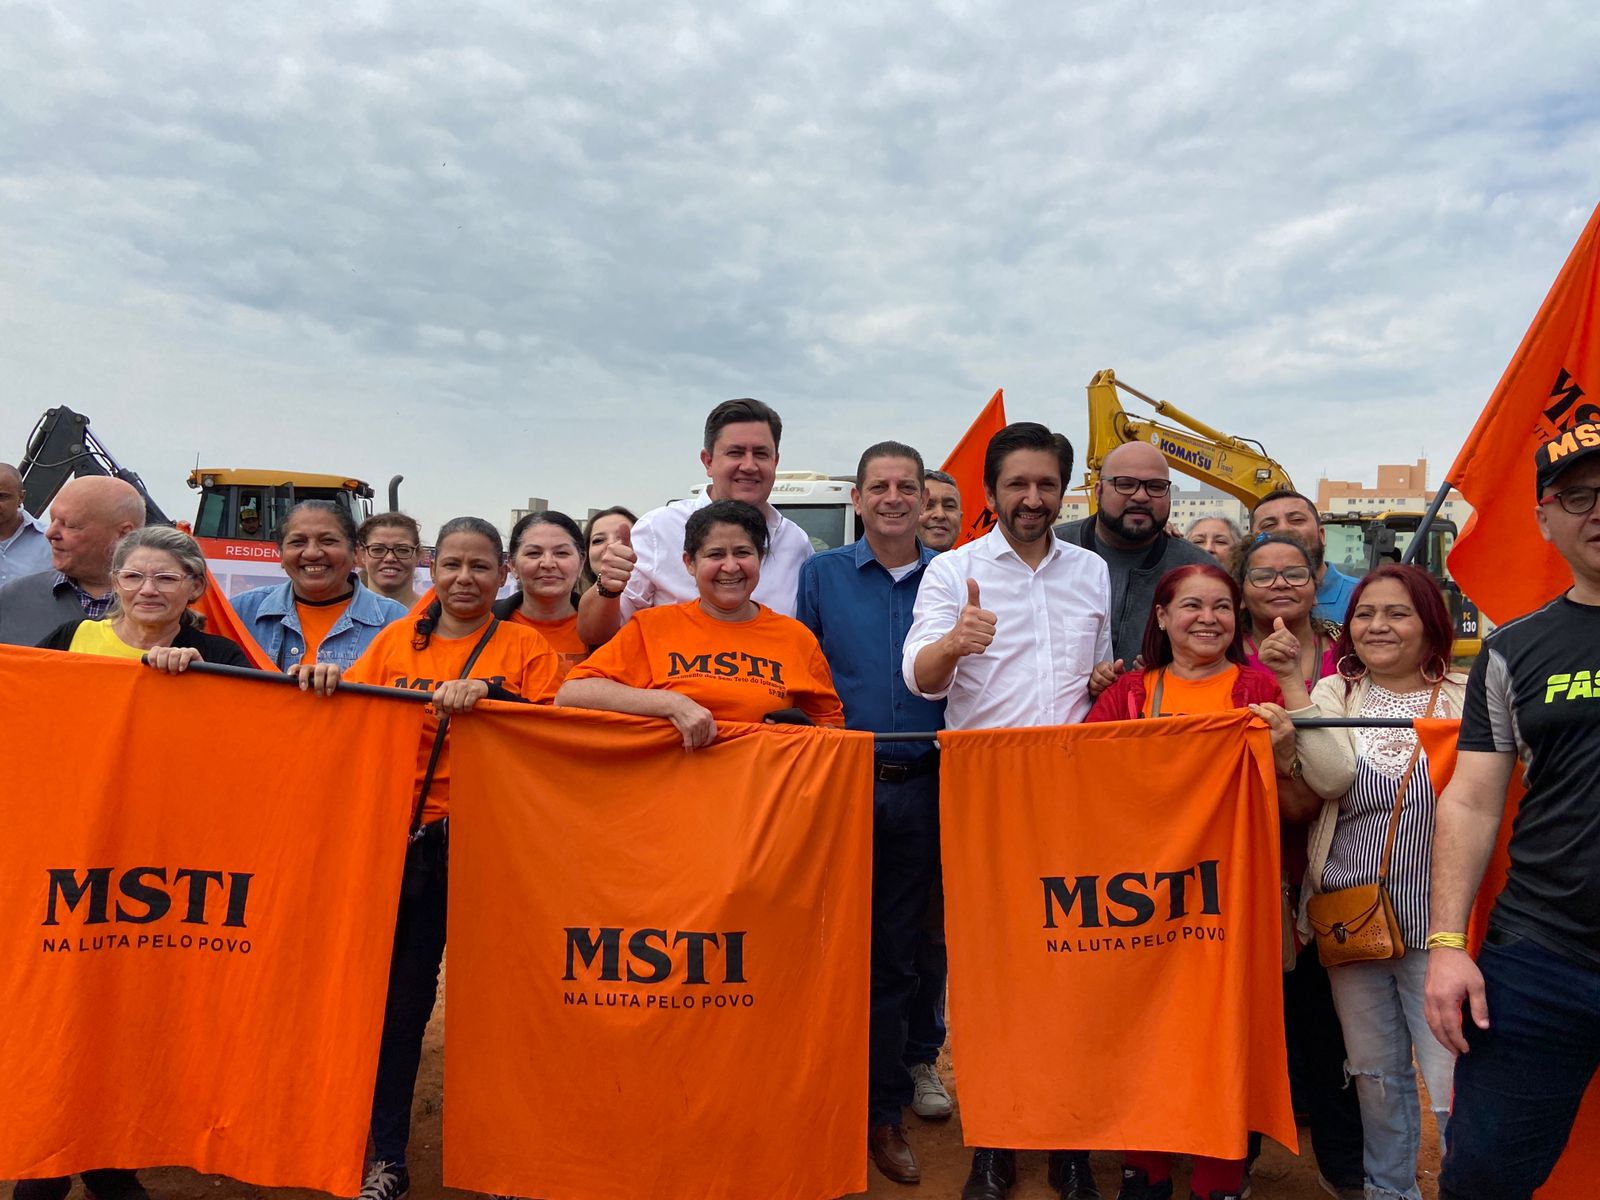 Prefeito de São Paulo Ricardo Nunes, Presidente da Cohab, Alex Peixe e o Secretário Municipal de Habitação João Farias posam junto com membros do movimento MSTI que estão de camisas laranjas.